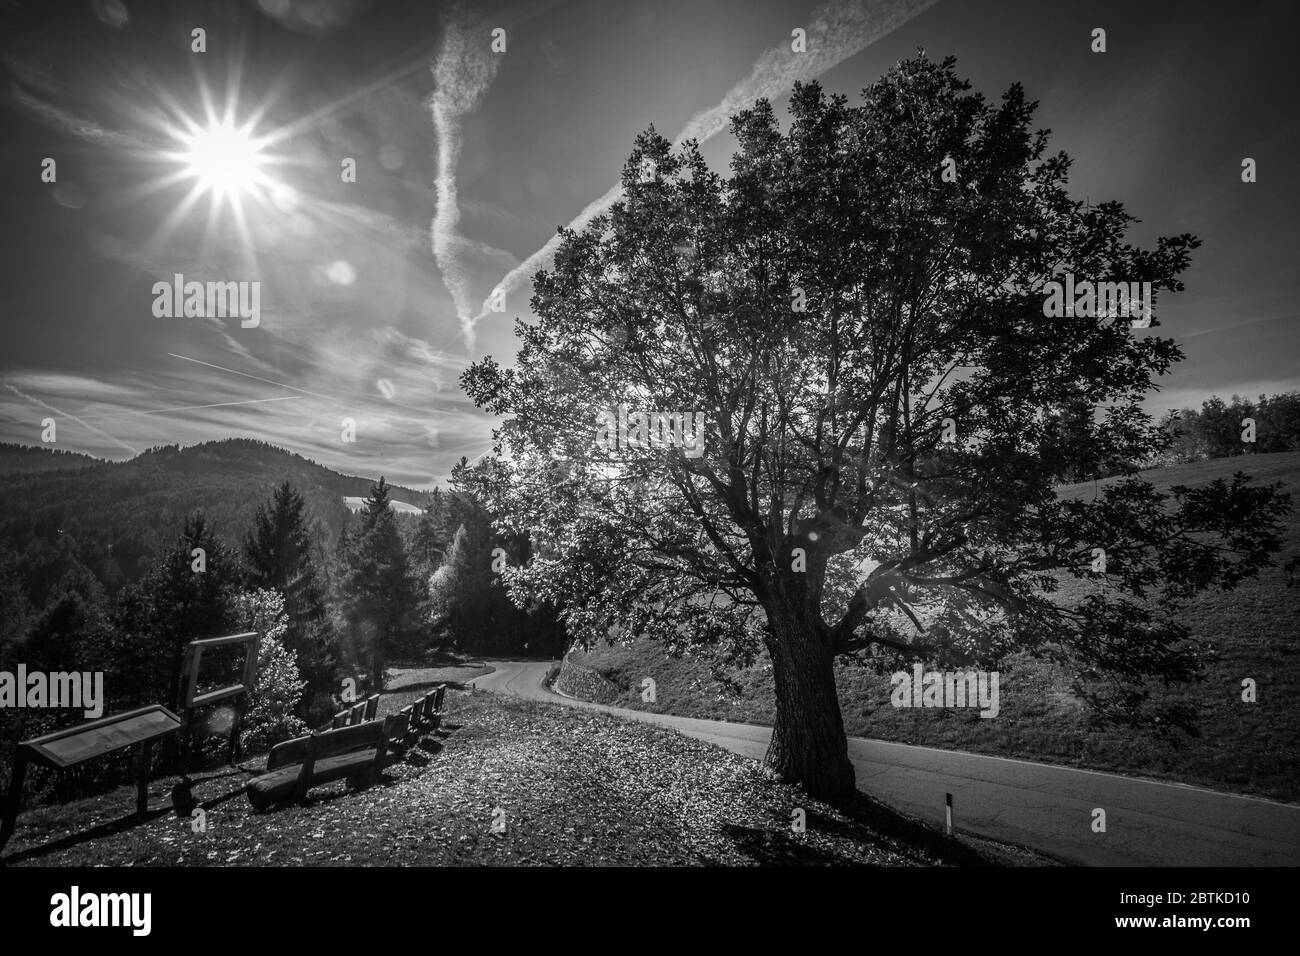 Effetto bianco e nero di quercia con sole luminoso sullo sfondo, Collepietra - Steinegg, Alto Adige, Italia. Concetto: Paesaggio autunnale nelle Dolomiti Foto Stock